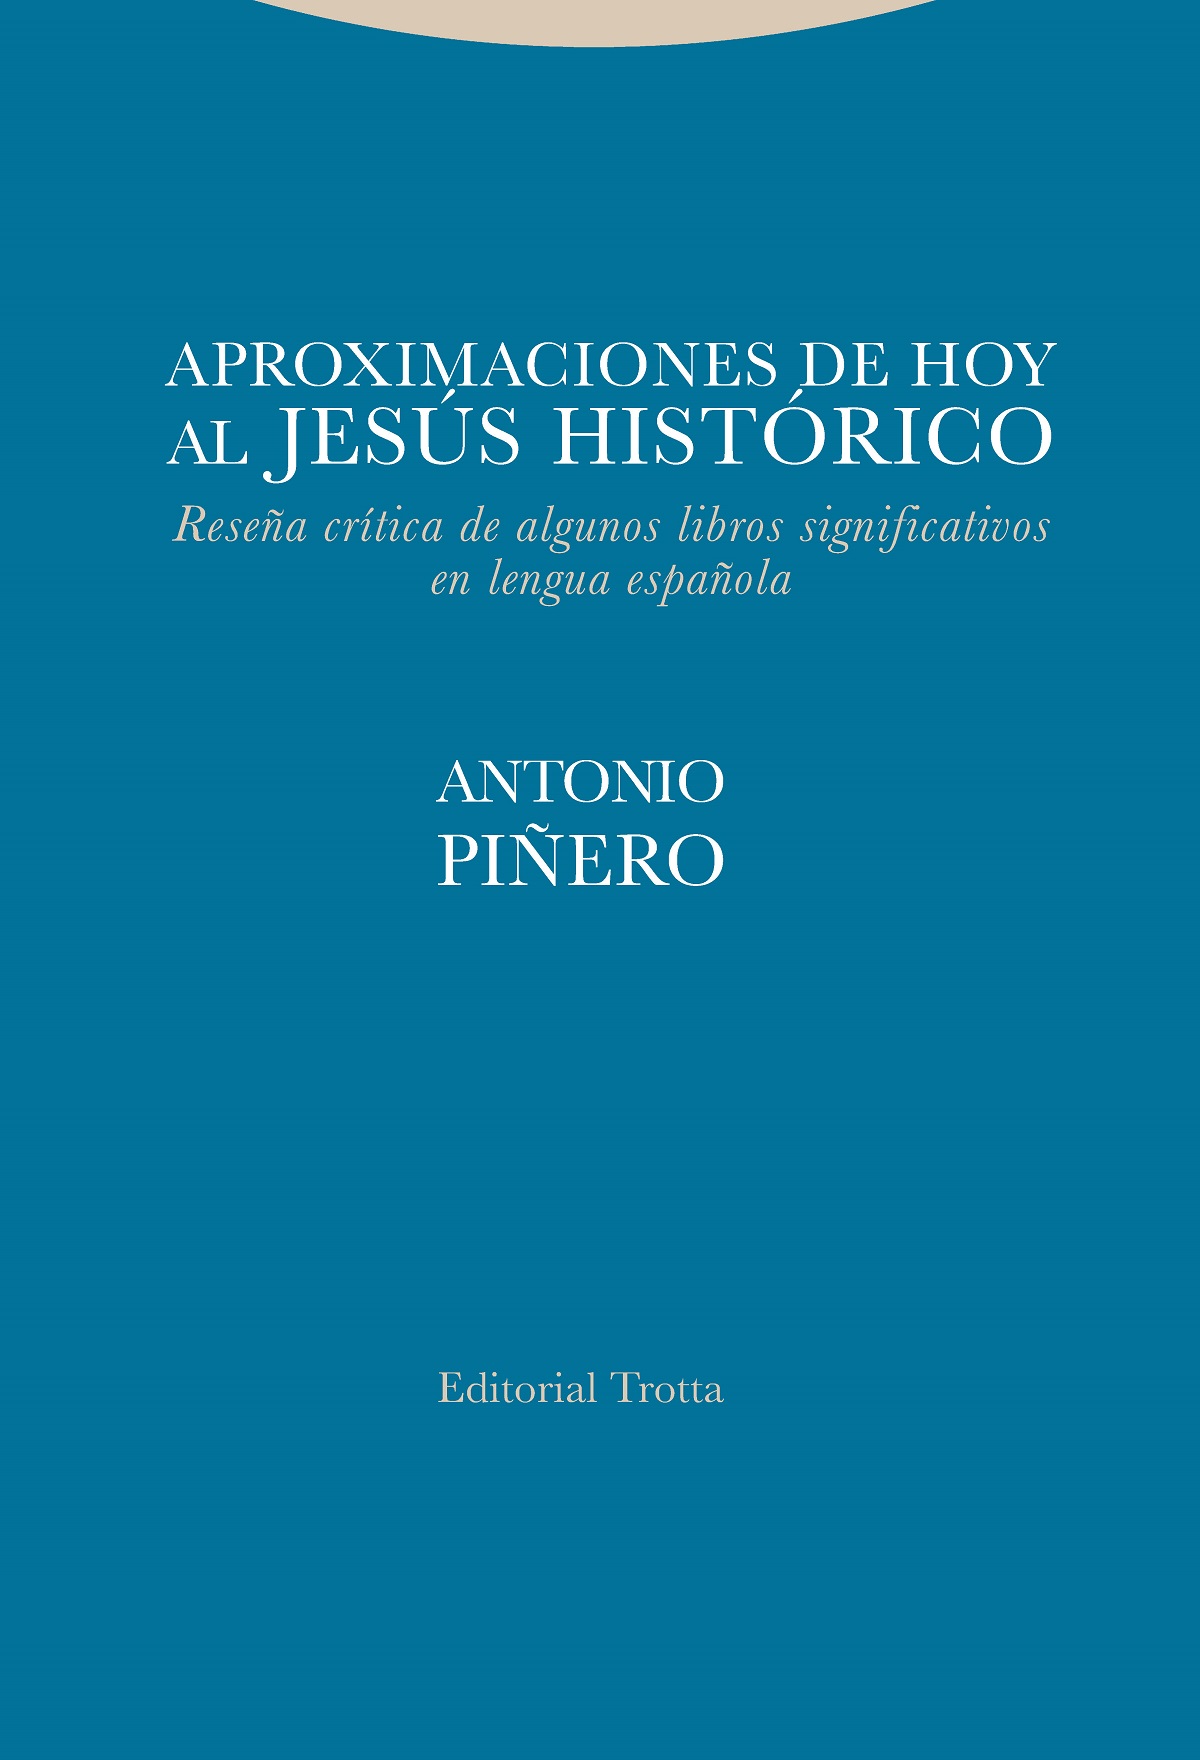 Editorial Trotta Antonio Piñero